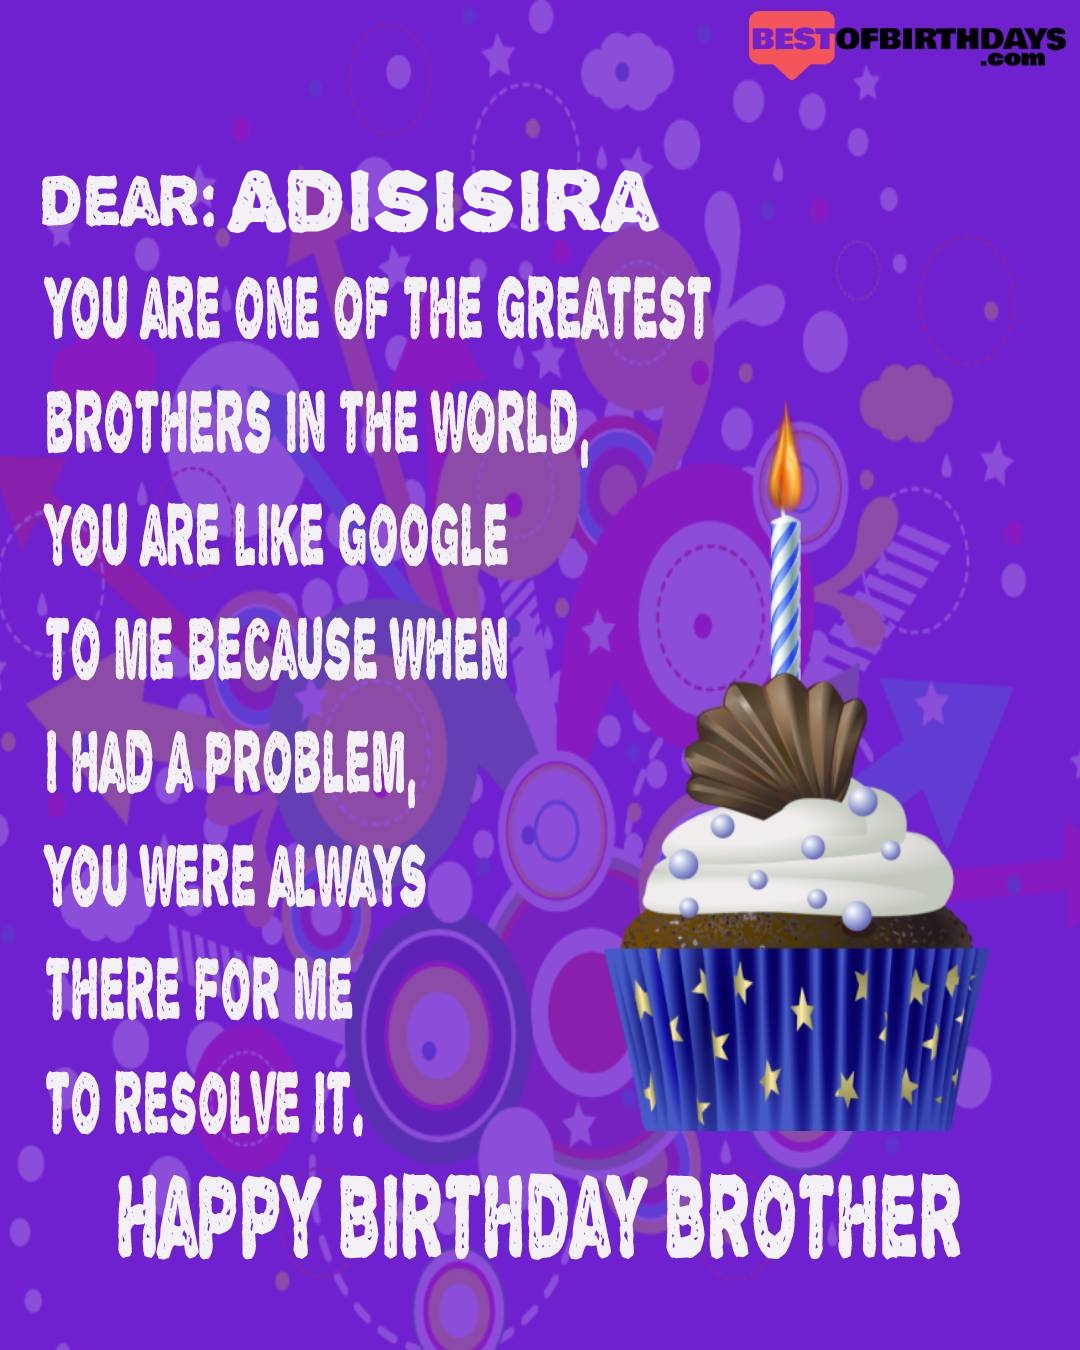 Happy birthday adisisira bhai brother bro